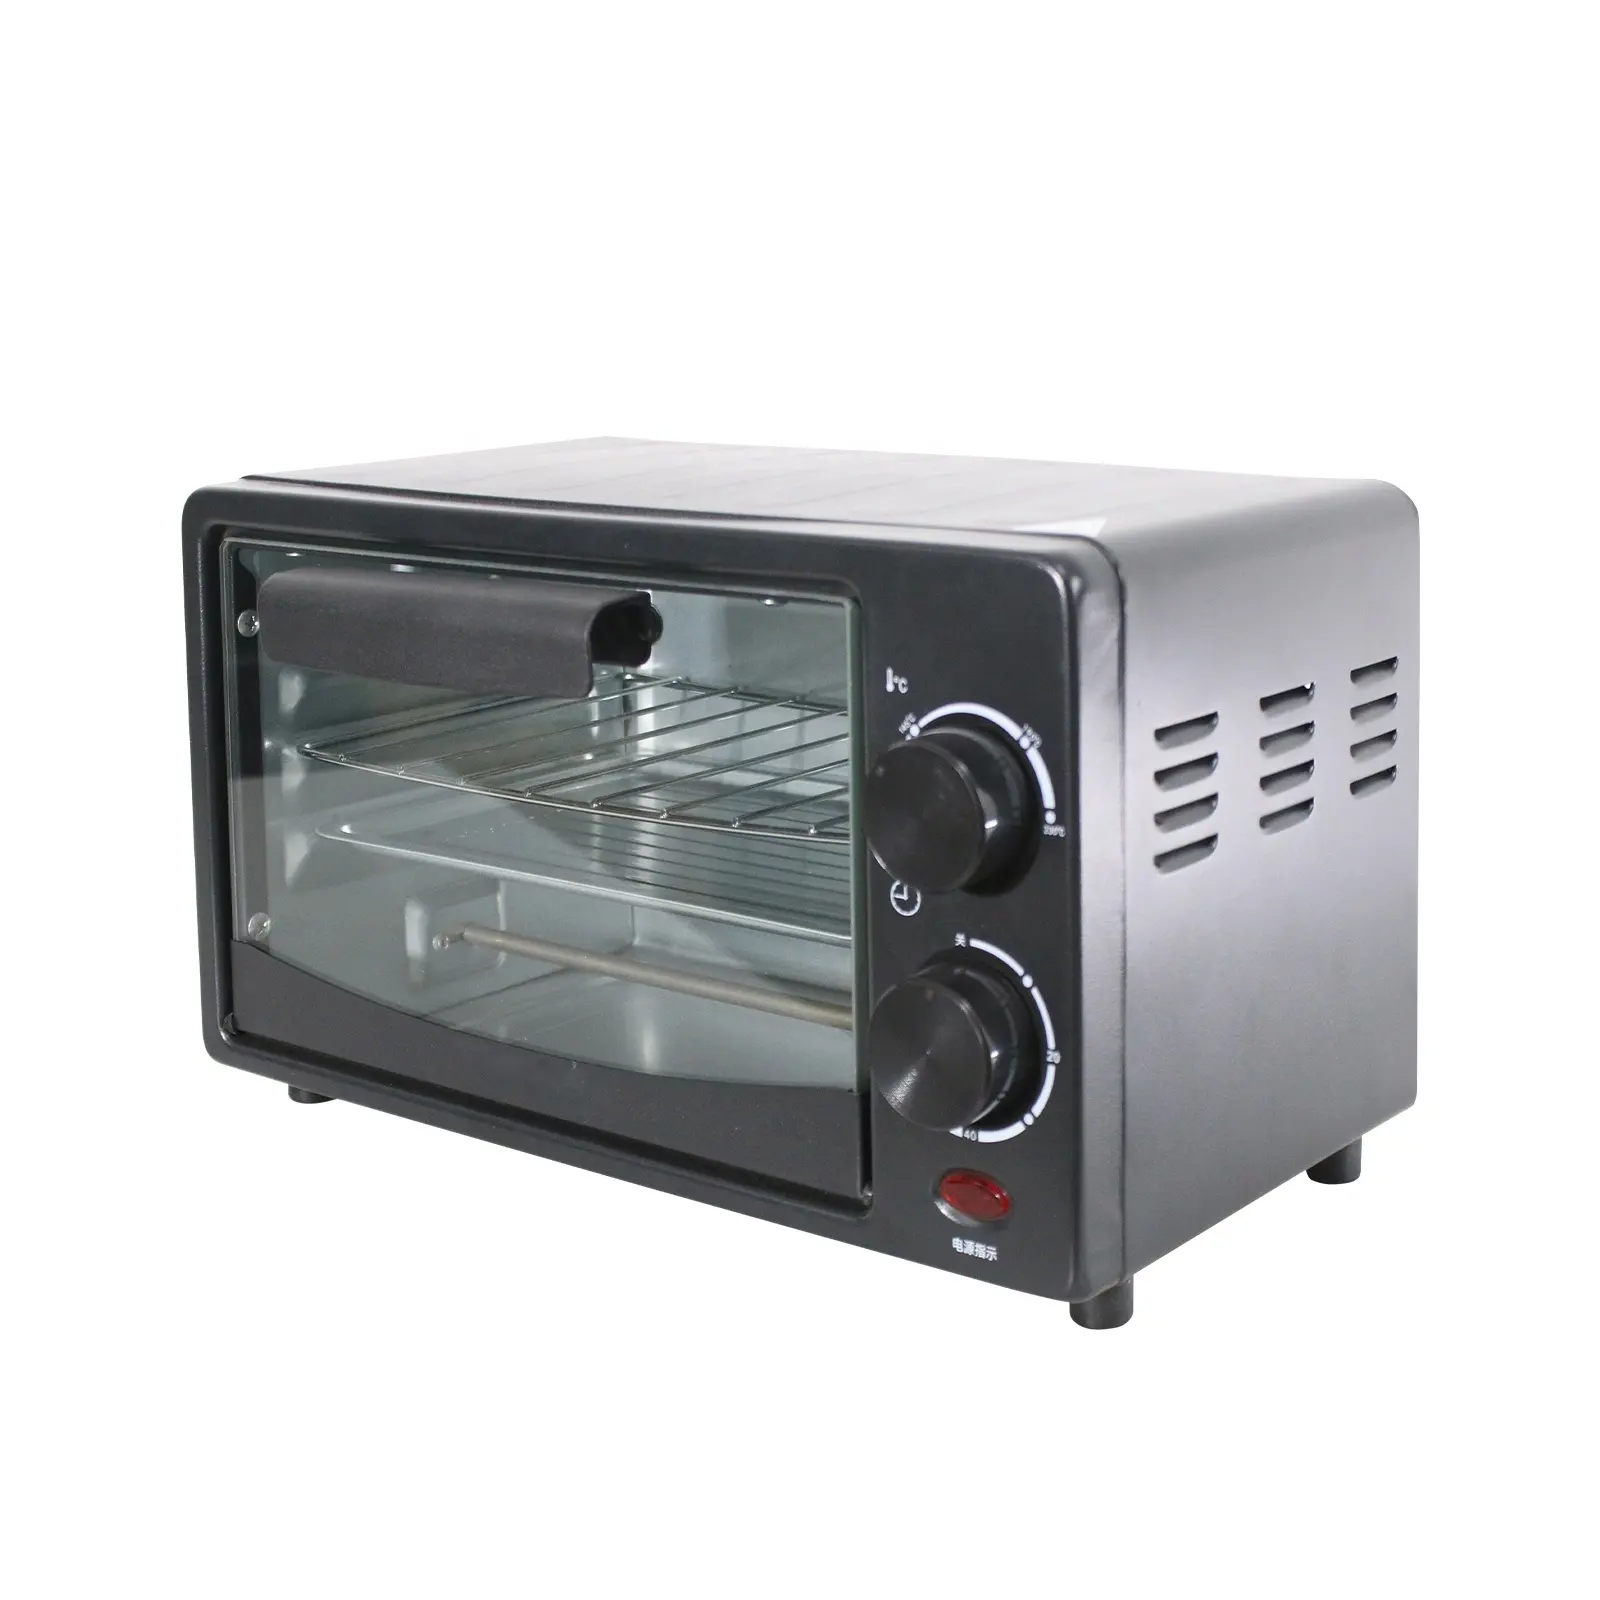 Oem Kleine Capaciteit 7l Bakkerij Aanrecht Bakken Broodrooster Oven Elektrische Pizza Oven